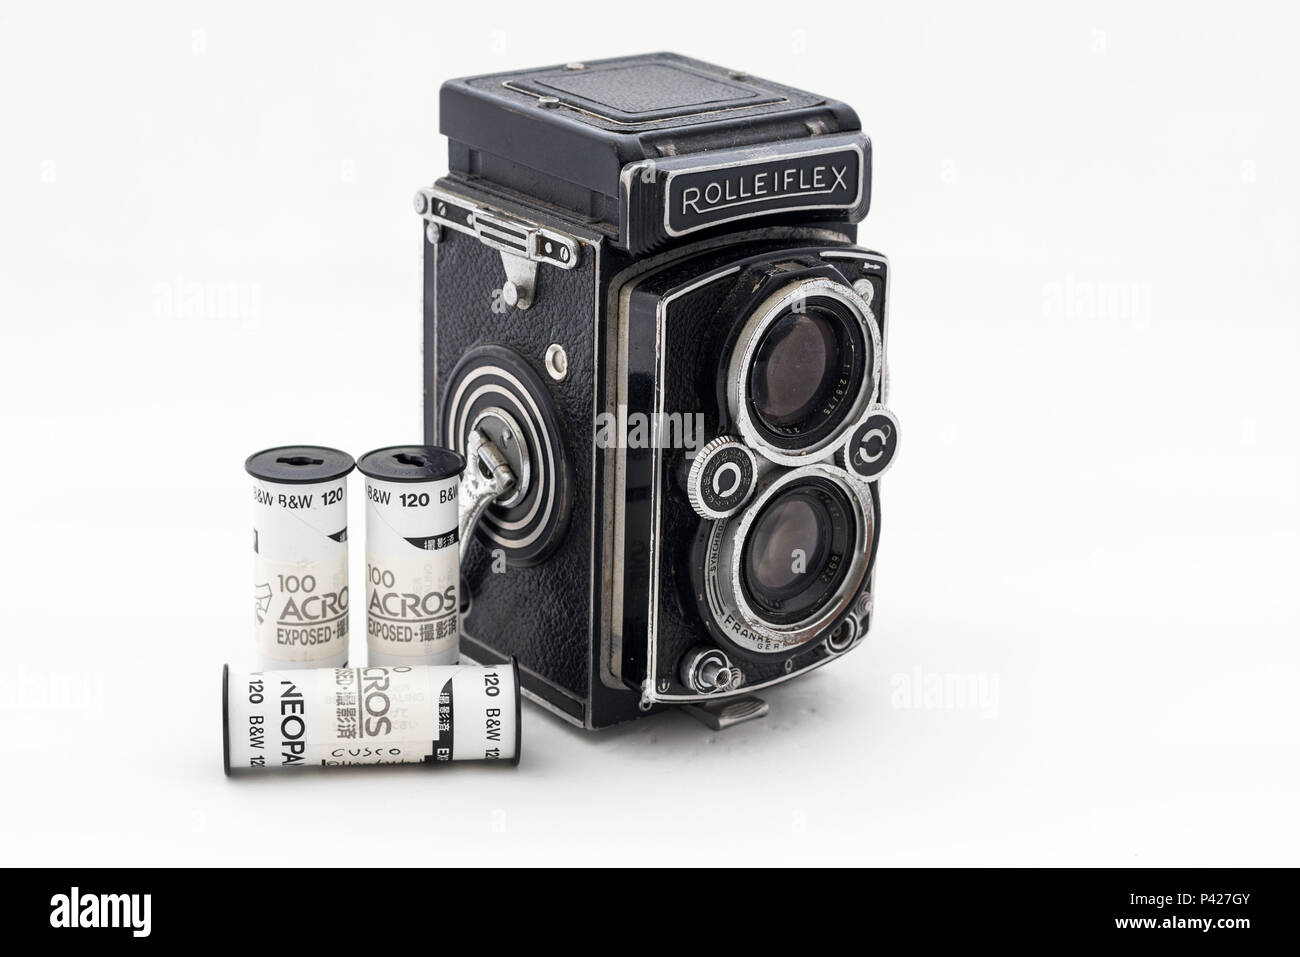 Antiga câmera Rolleiflex 1957 e rolos de filme Fuji. Stockfoto